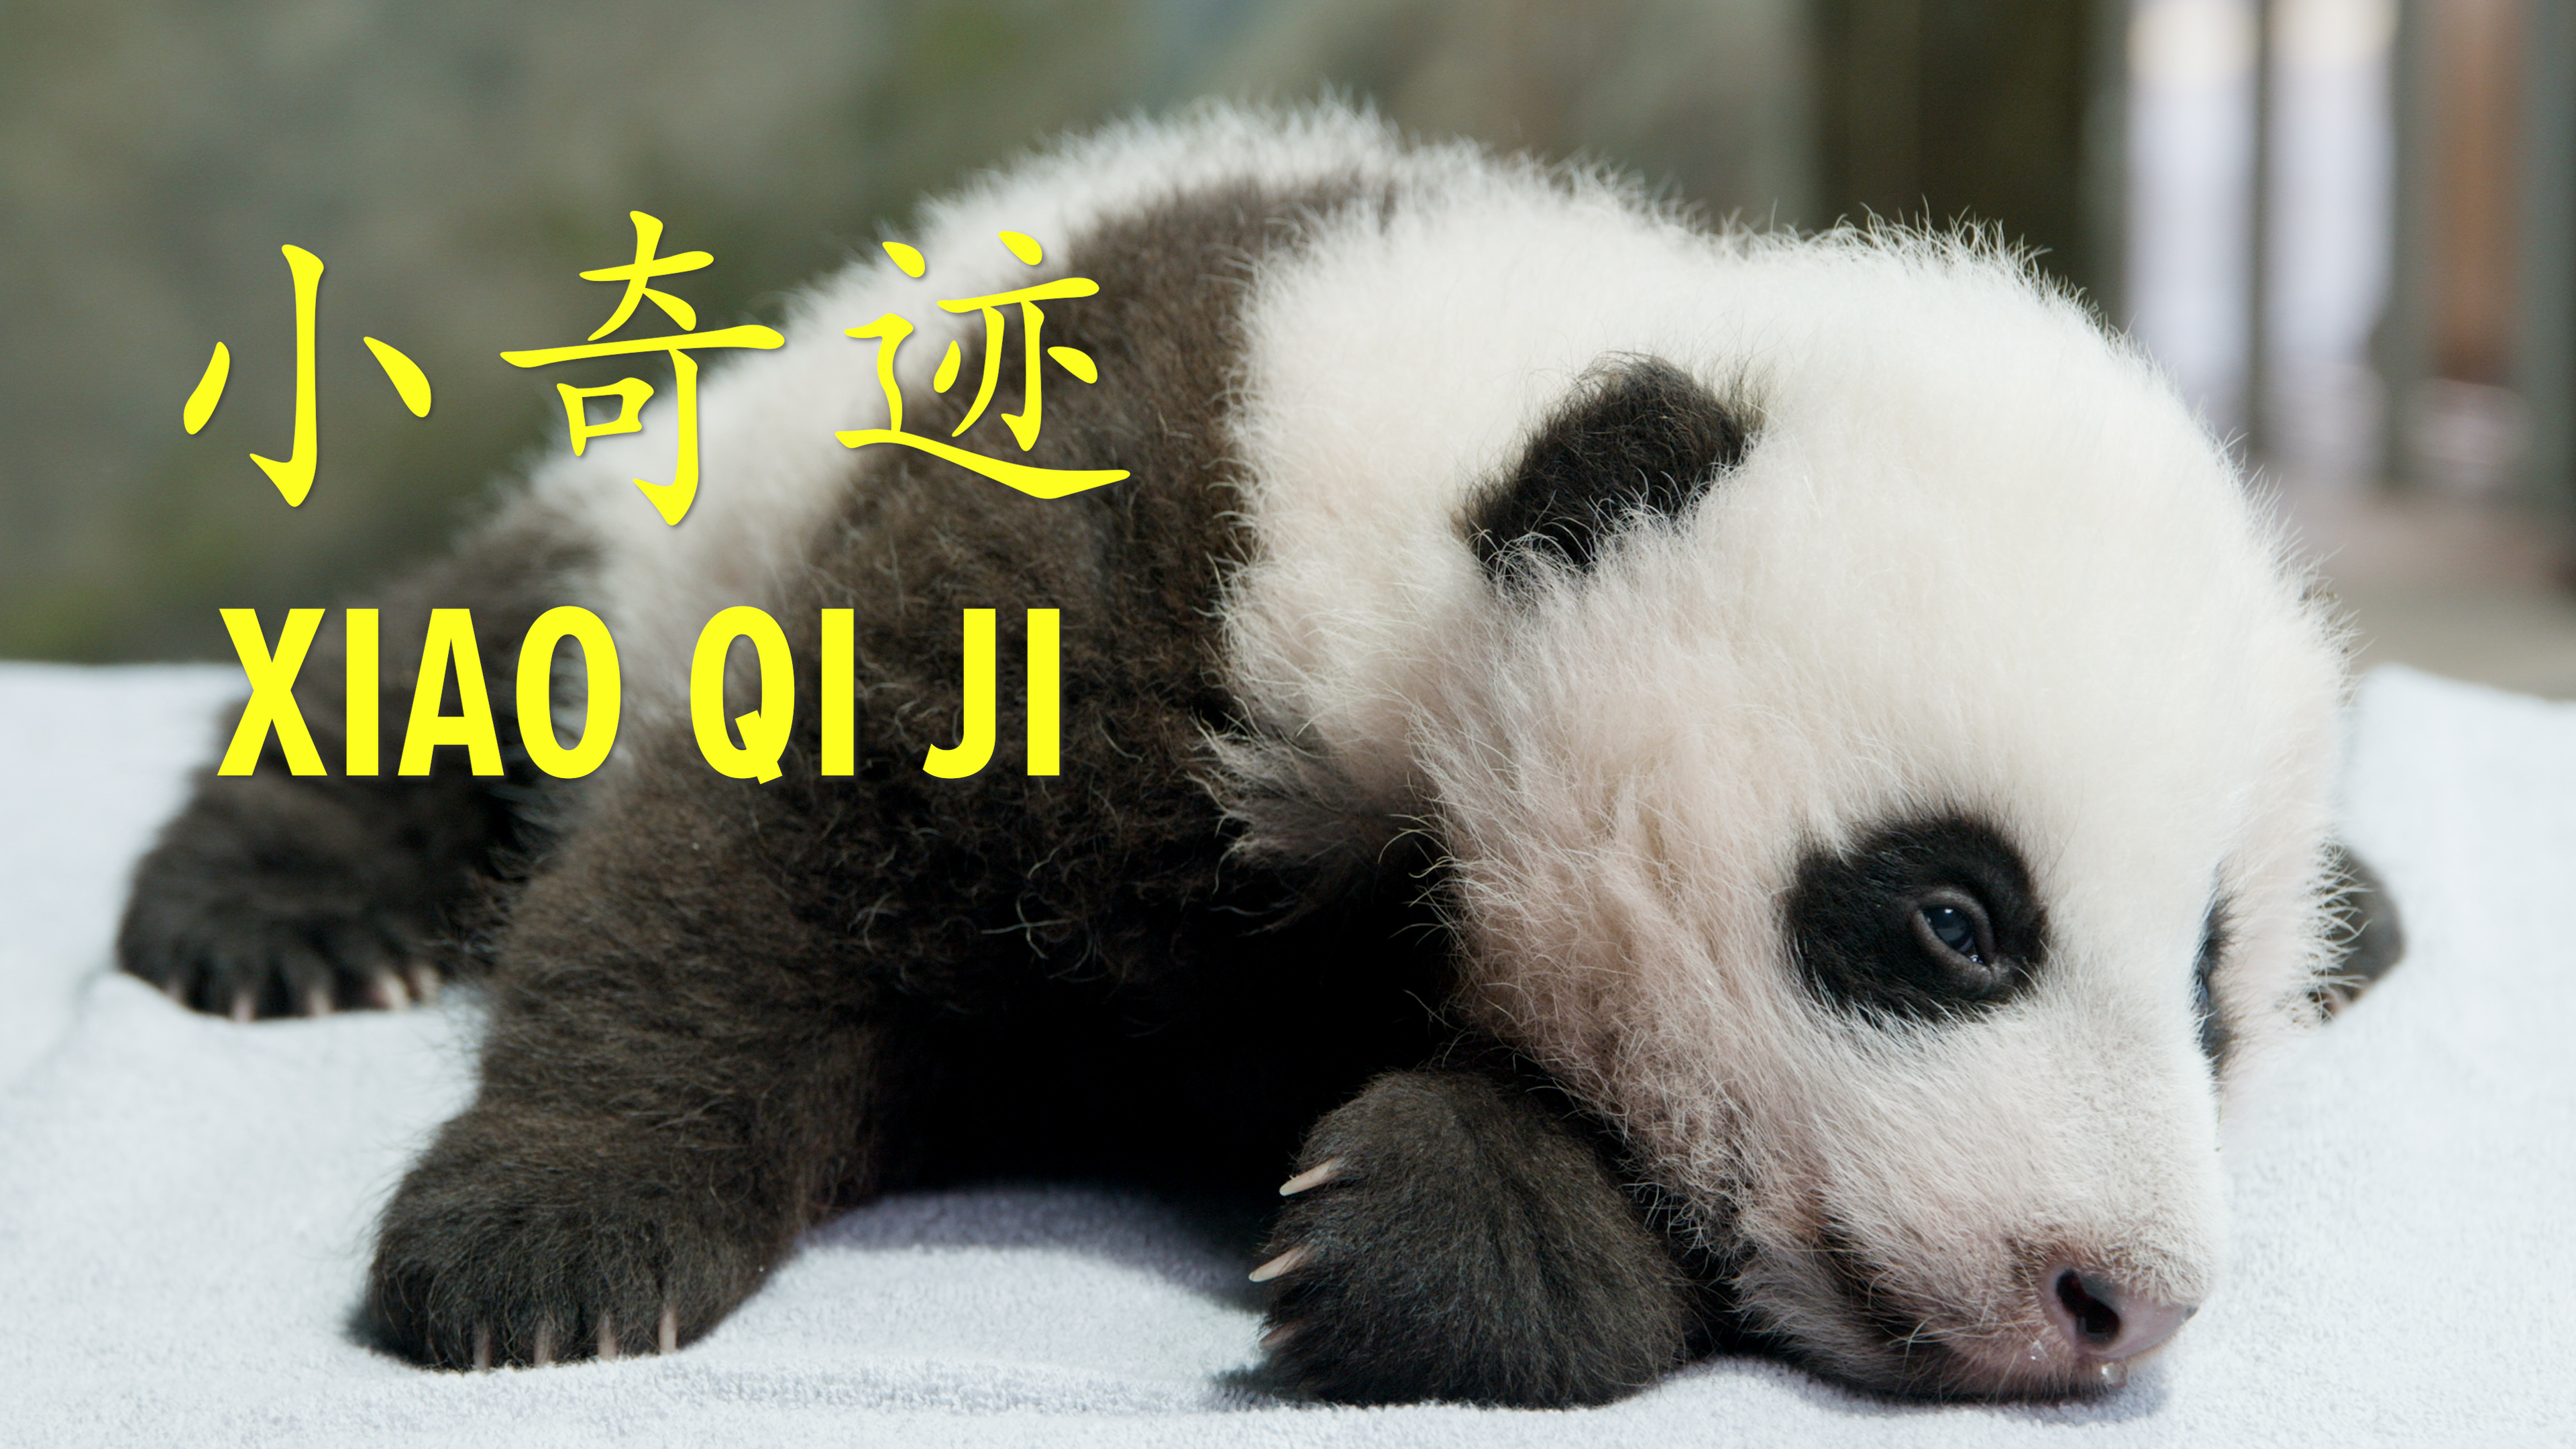 His Name Is Xiao Qi Ji Smithsonian S National Zoo